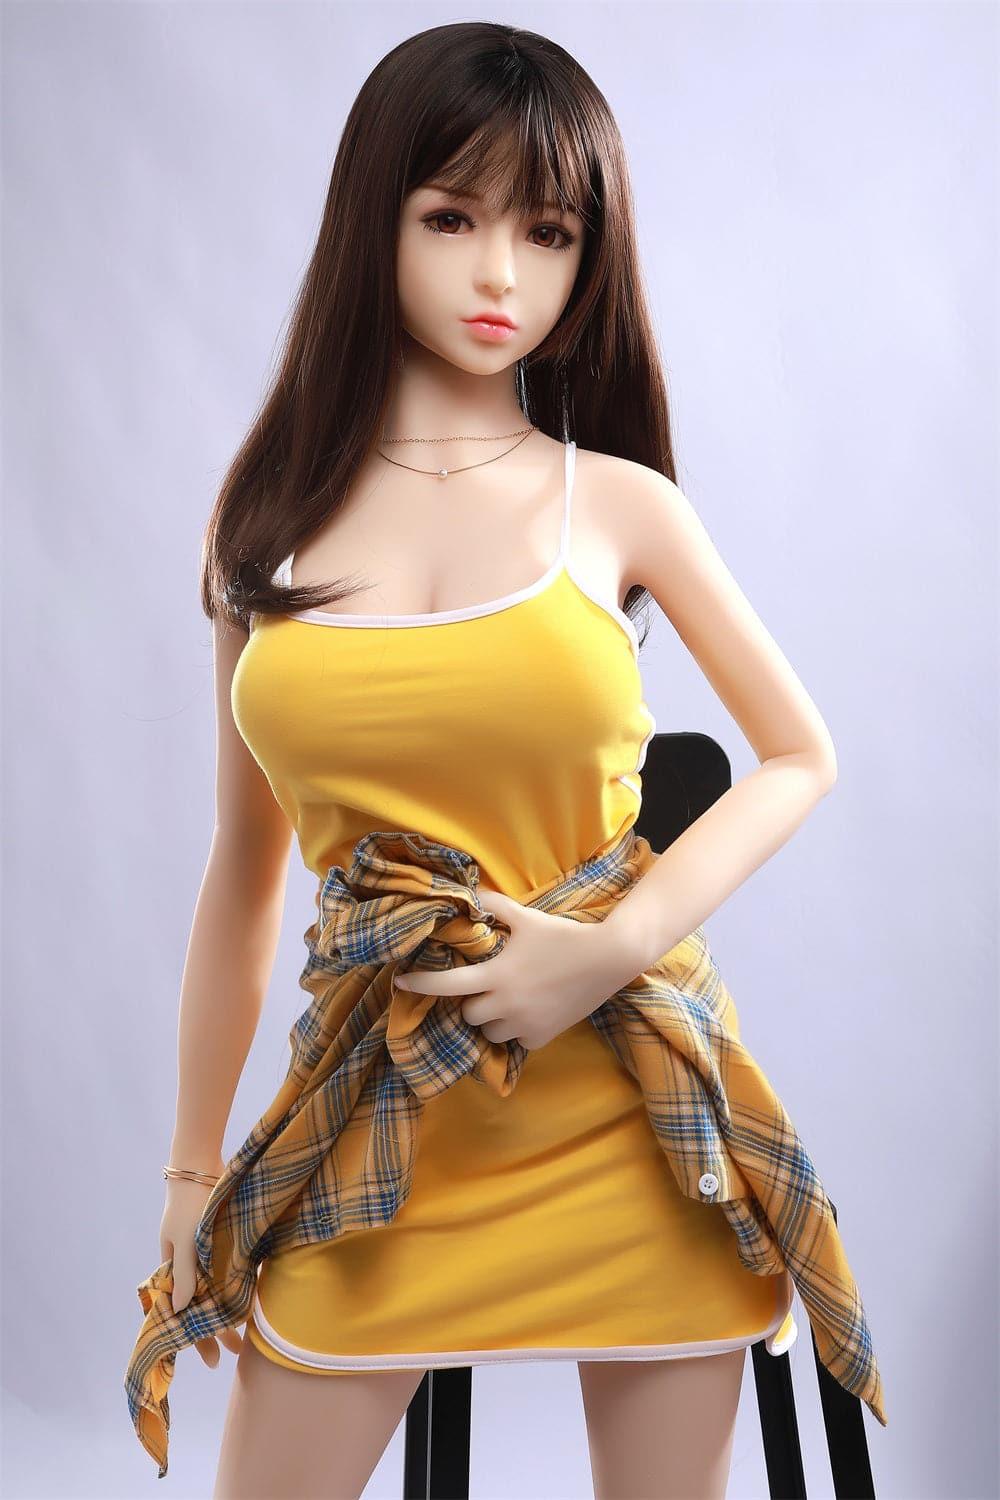 153cm (5' 0") Small Boobs Sex Doll - Cynthia-DreamLoveDoll